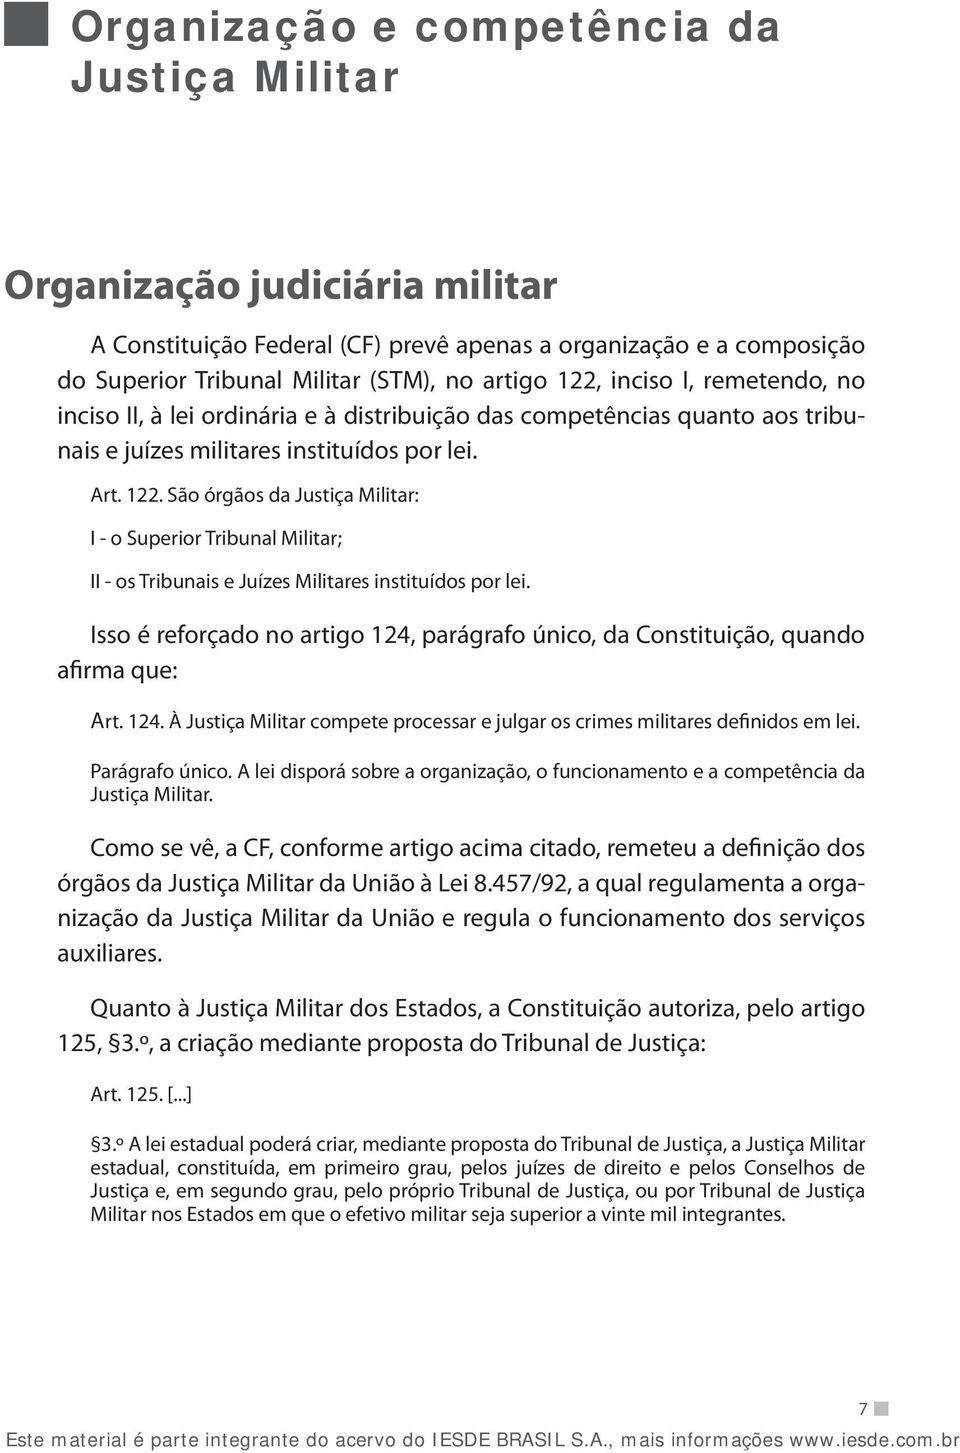 São órgãos da Justiça Militar: I - o Superior Tribunal Militar; II - os Tribunais e Juízes Militares instituídos por lei.